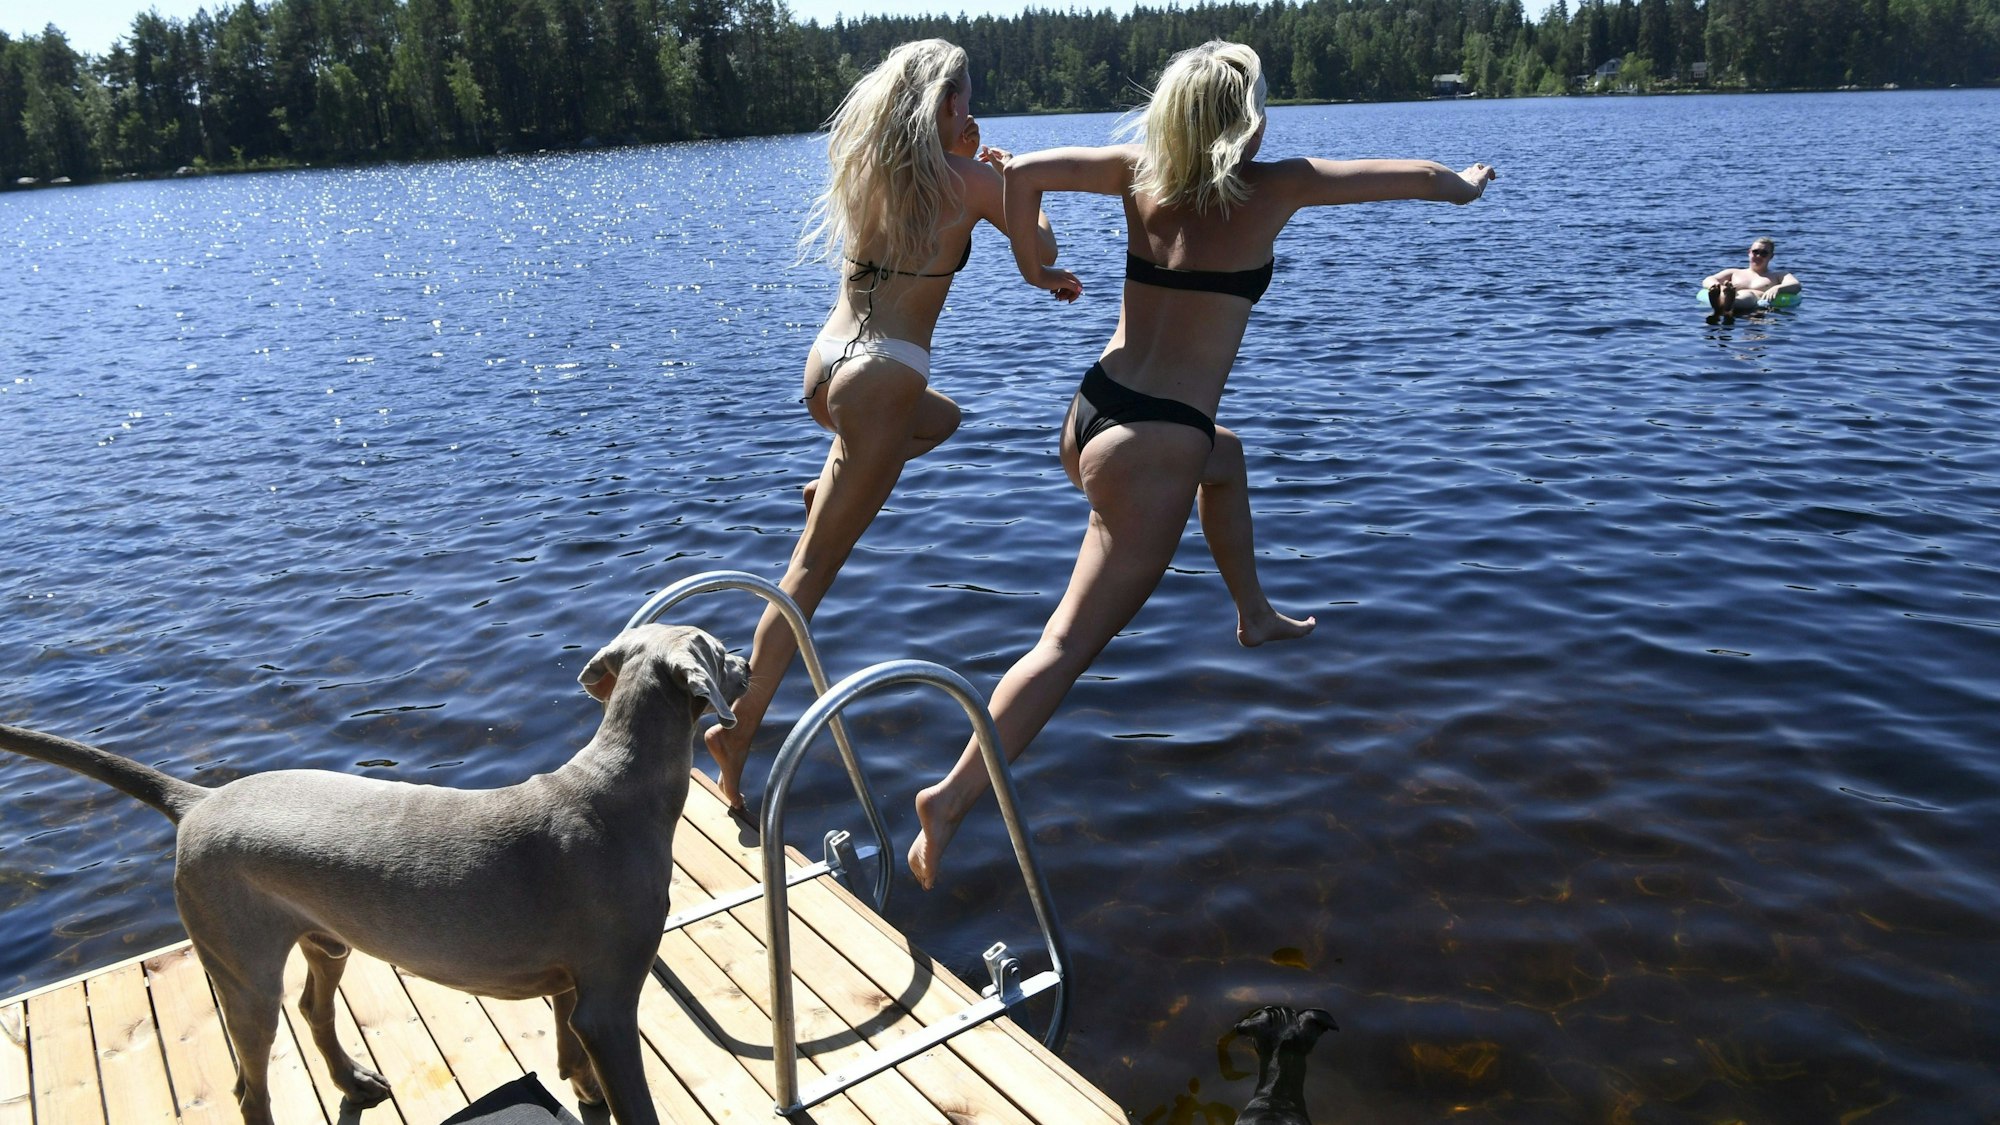 Finnland, Kouvola: Ein Hund beobachtet, wie zwei jungen Frauen von einem Steg in den Vuohijärvi-See springen.